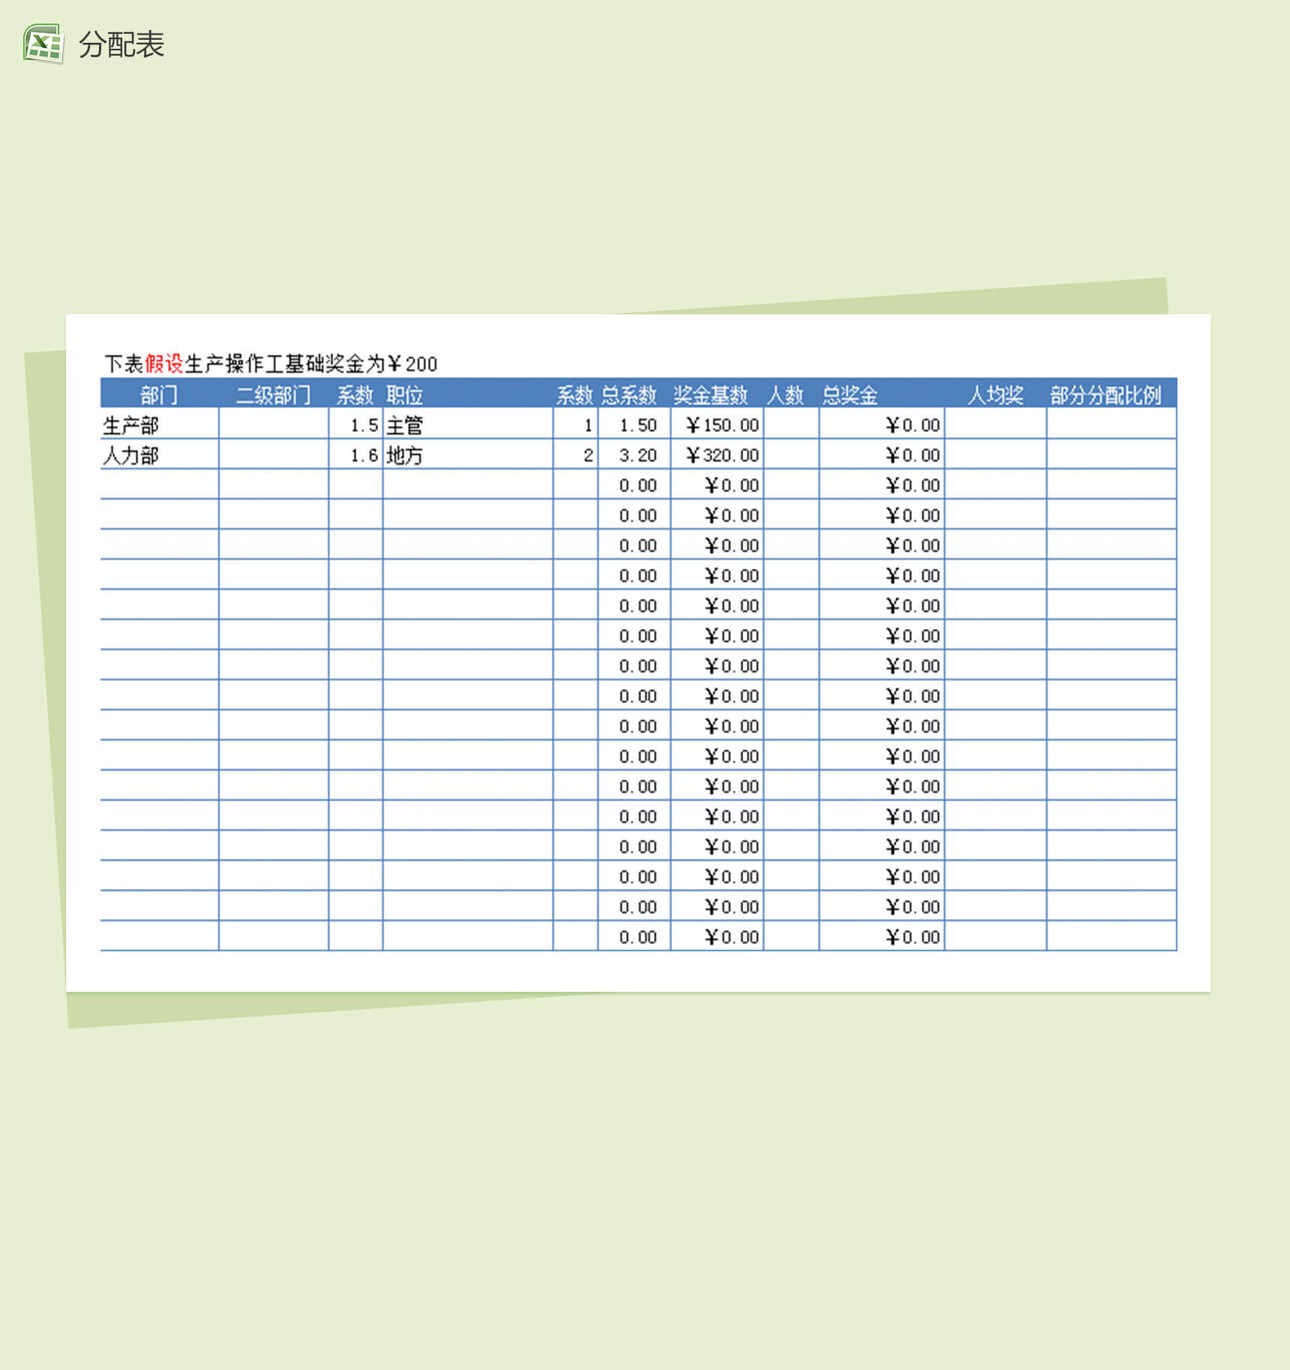 企业公司Excel奖金方案分配表模板